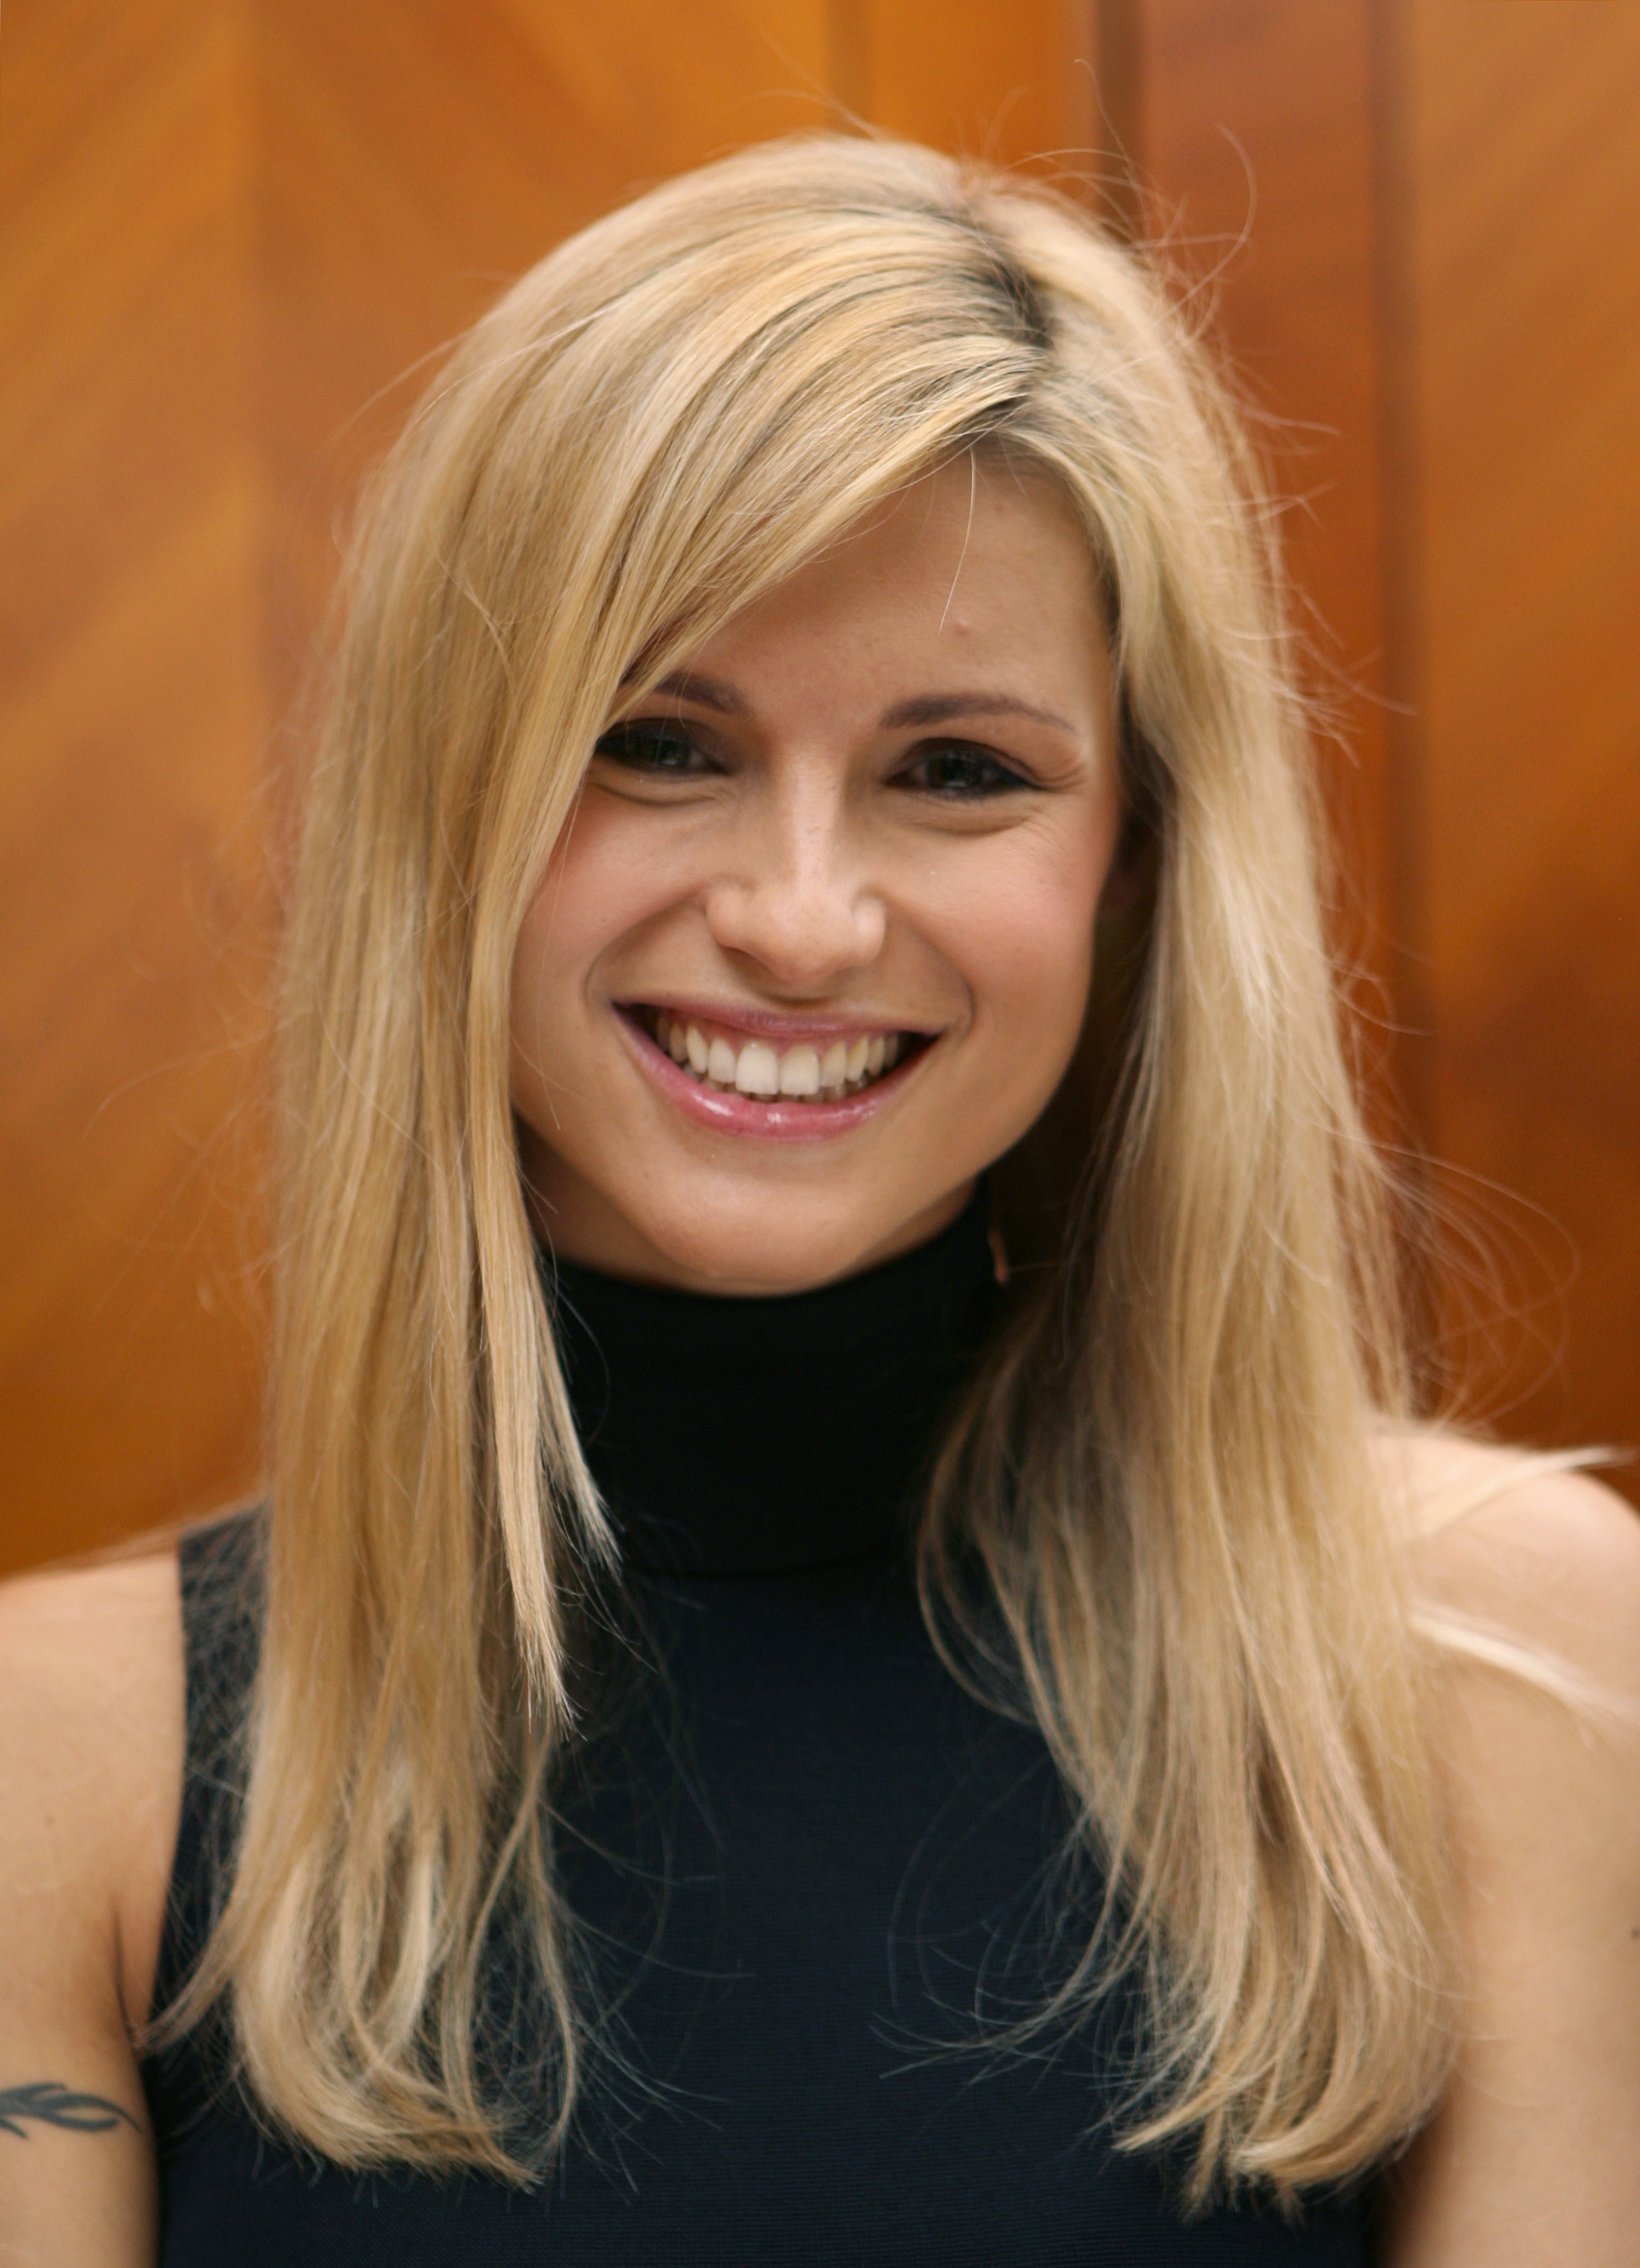 Michelle Hunziker